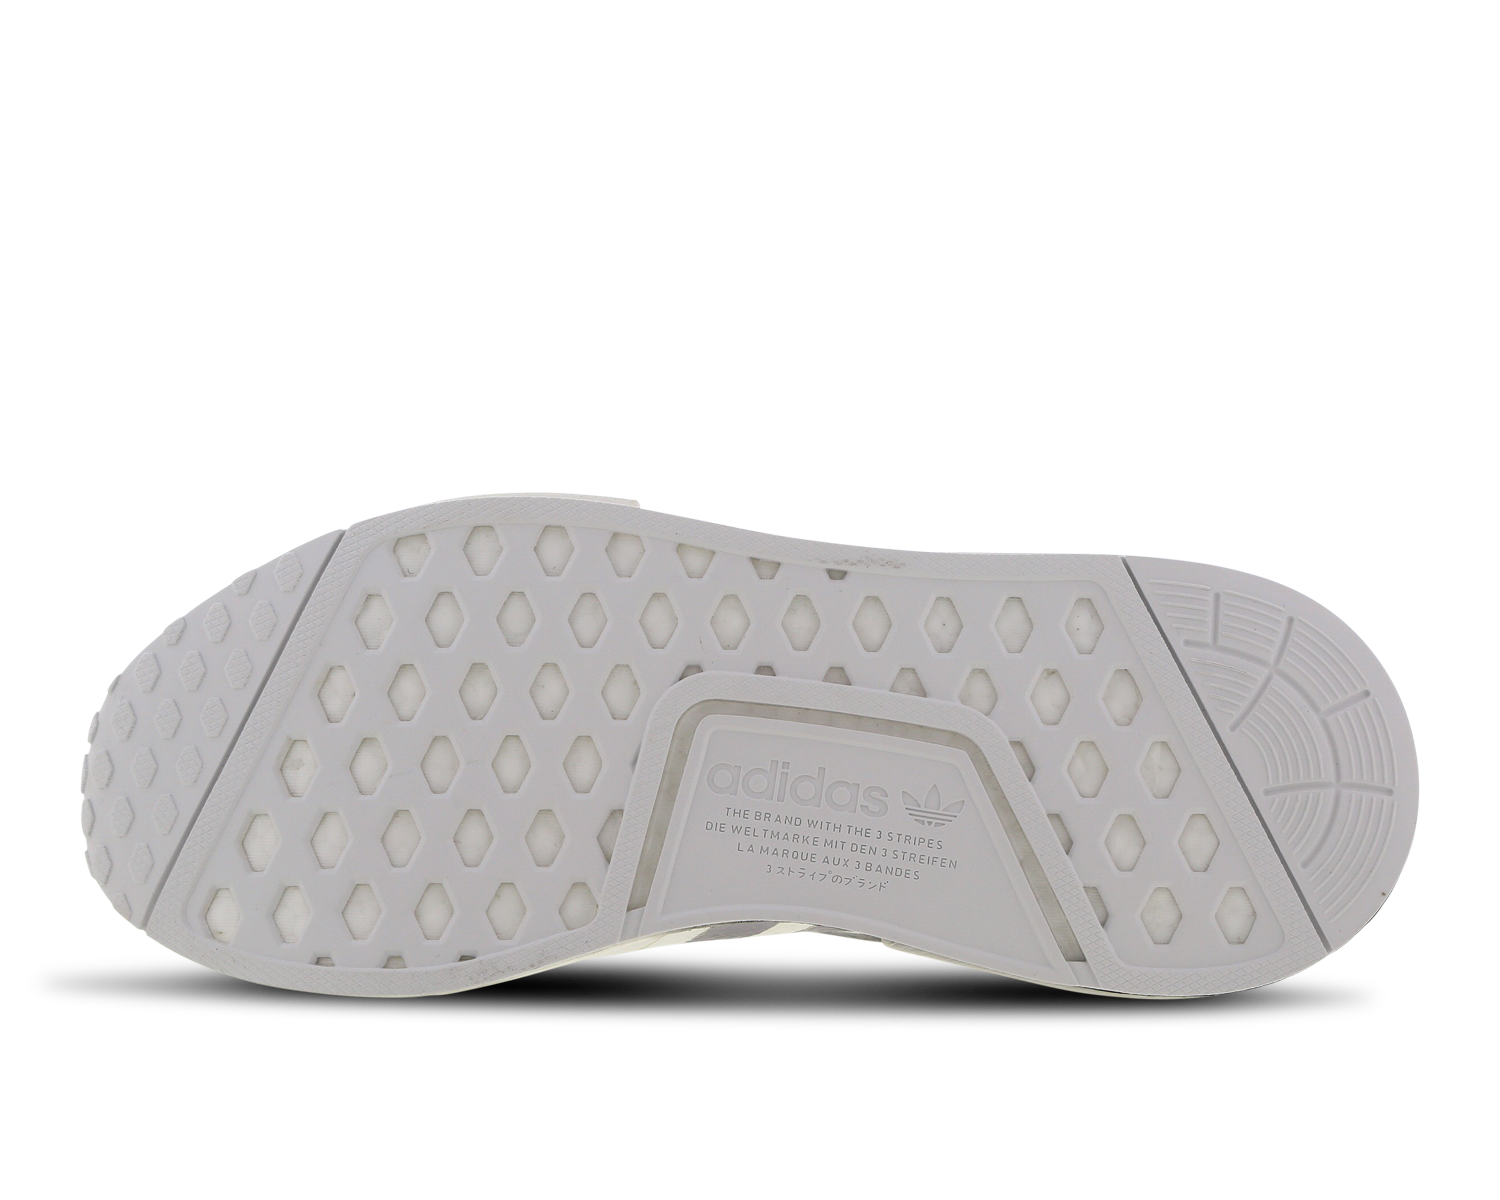 Adidas NMD R1 Primeknit Gum Sole Black Unboxing Feet